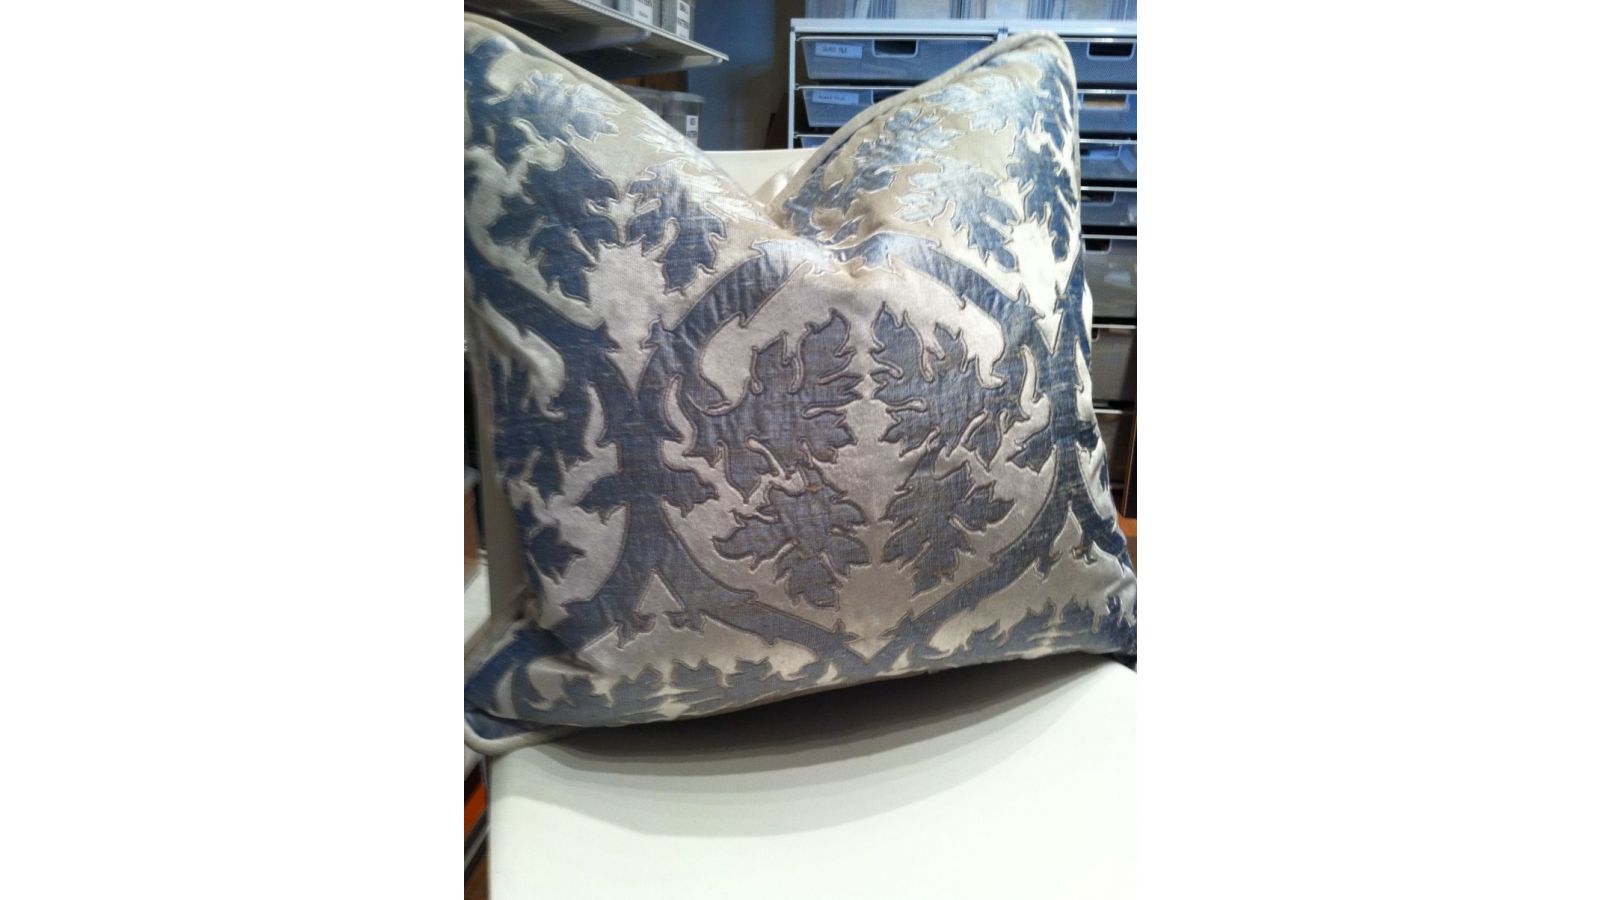 James Thomas Designed custom appliqued pillow